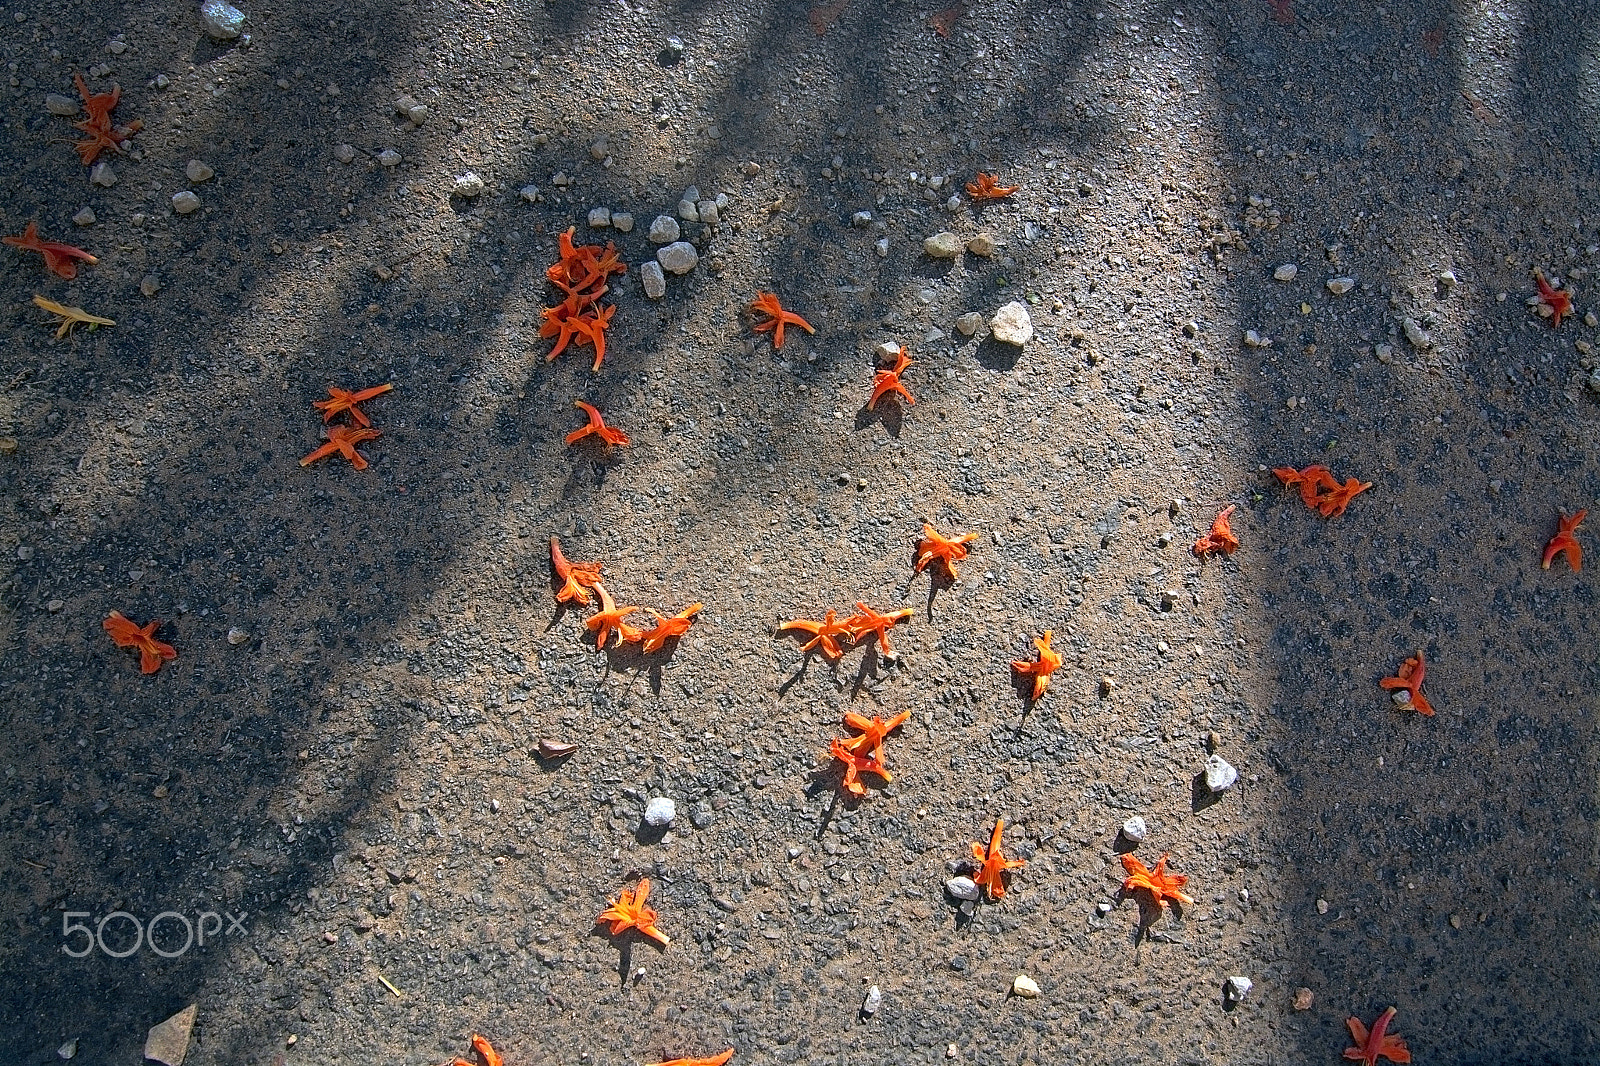 AF Zoom-Nikkor 24-50mm f/3.3-4.5D sample photo. Orange street flowers photography